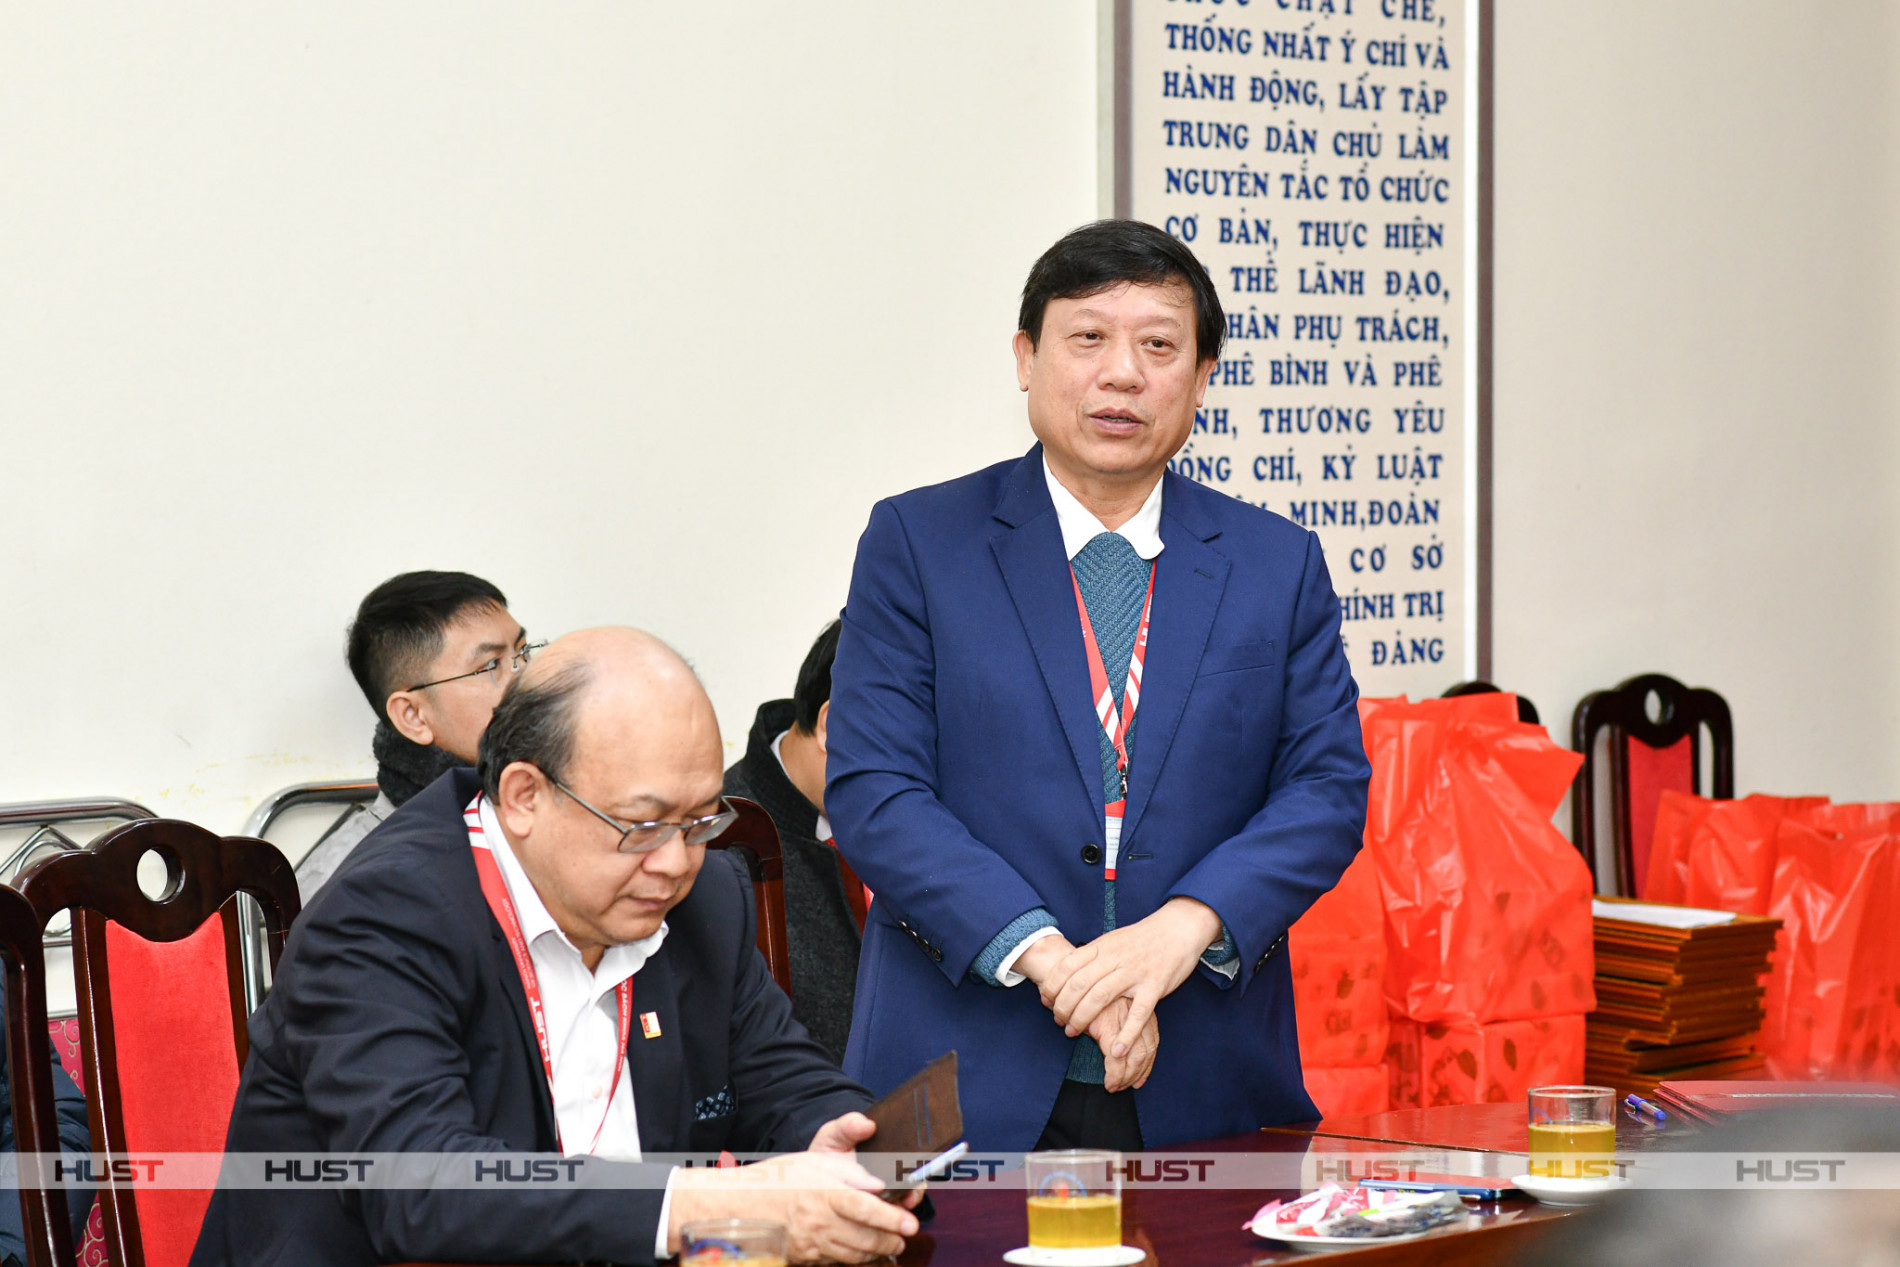 PGS. Bùi Đức Hùng – Phó Bí thư Thường trực ĐHBK Hà Nội phát biểu tại buổi gặp mặt ngày 29/2.